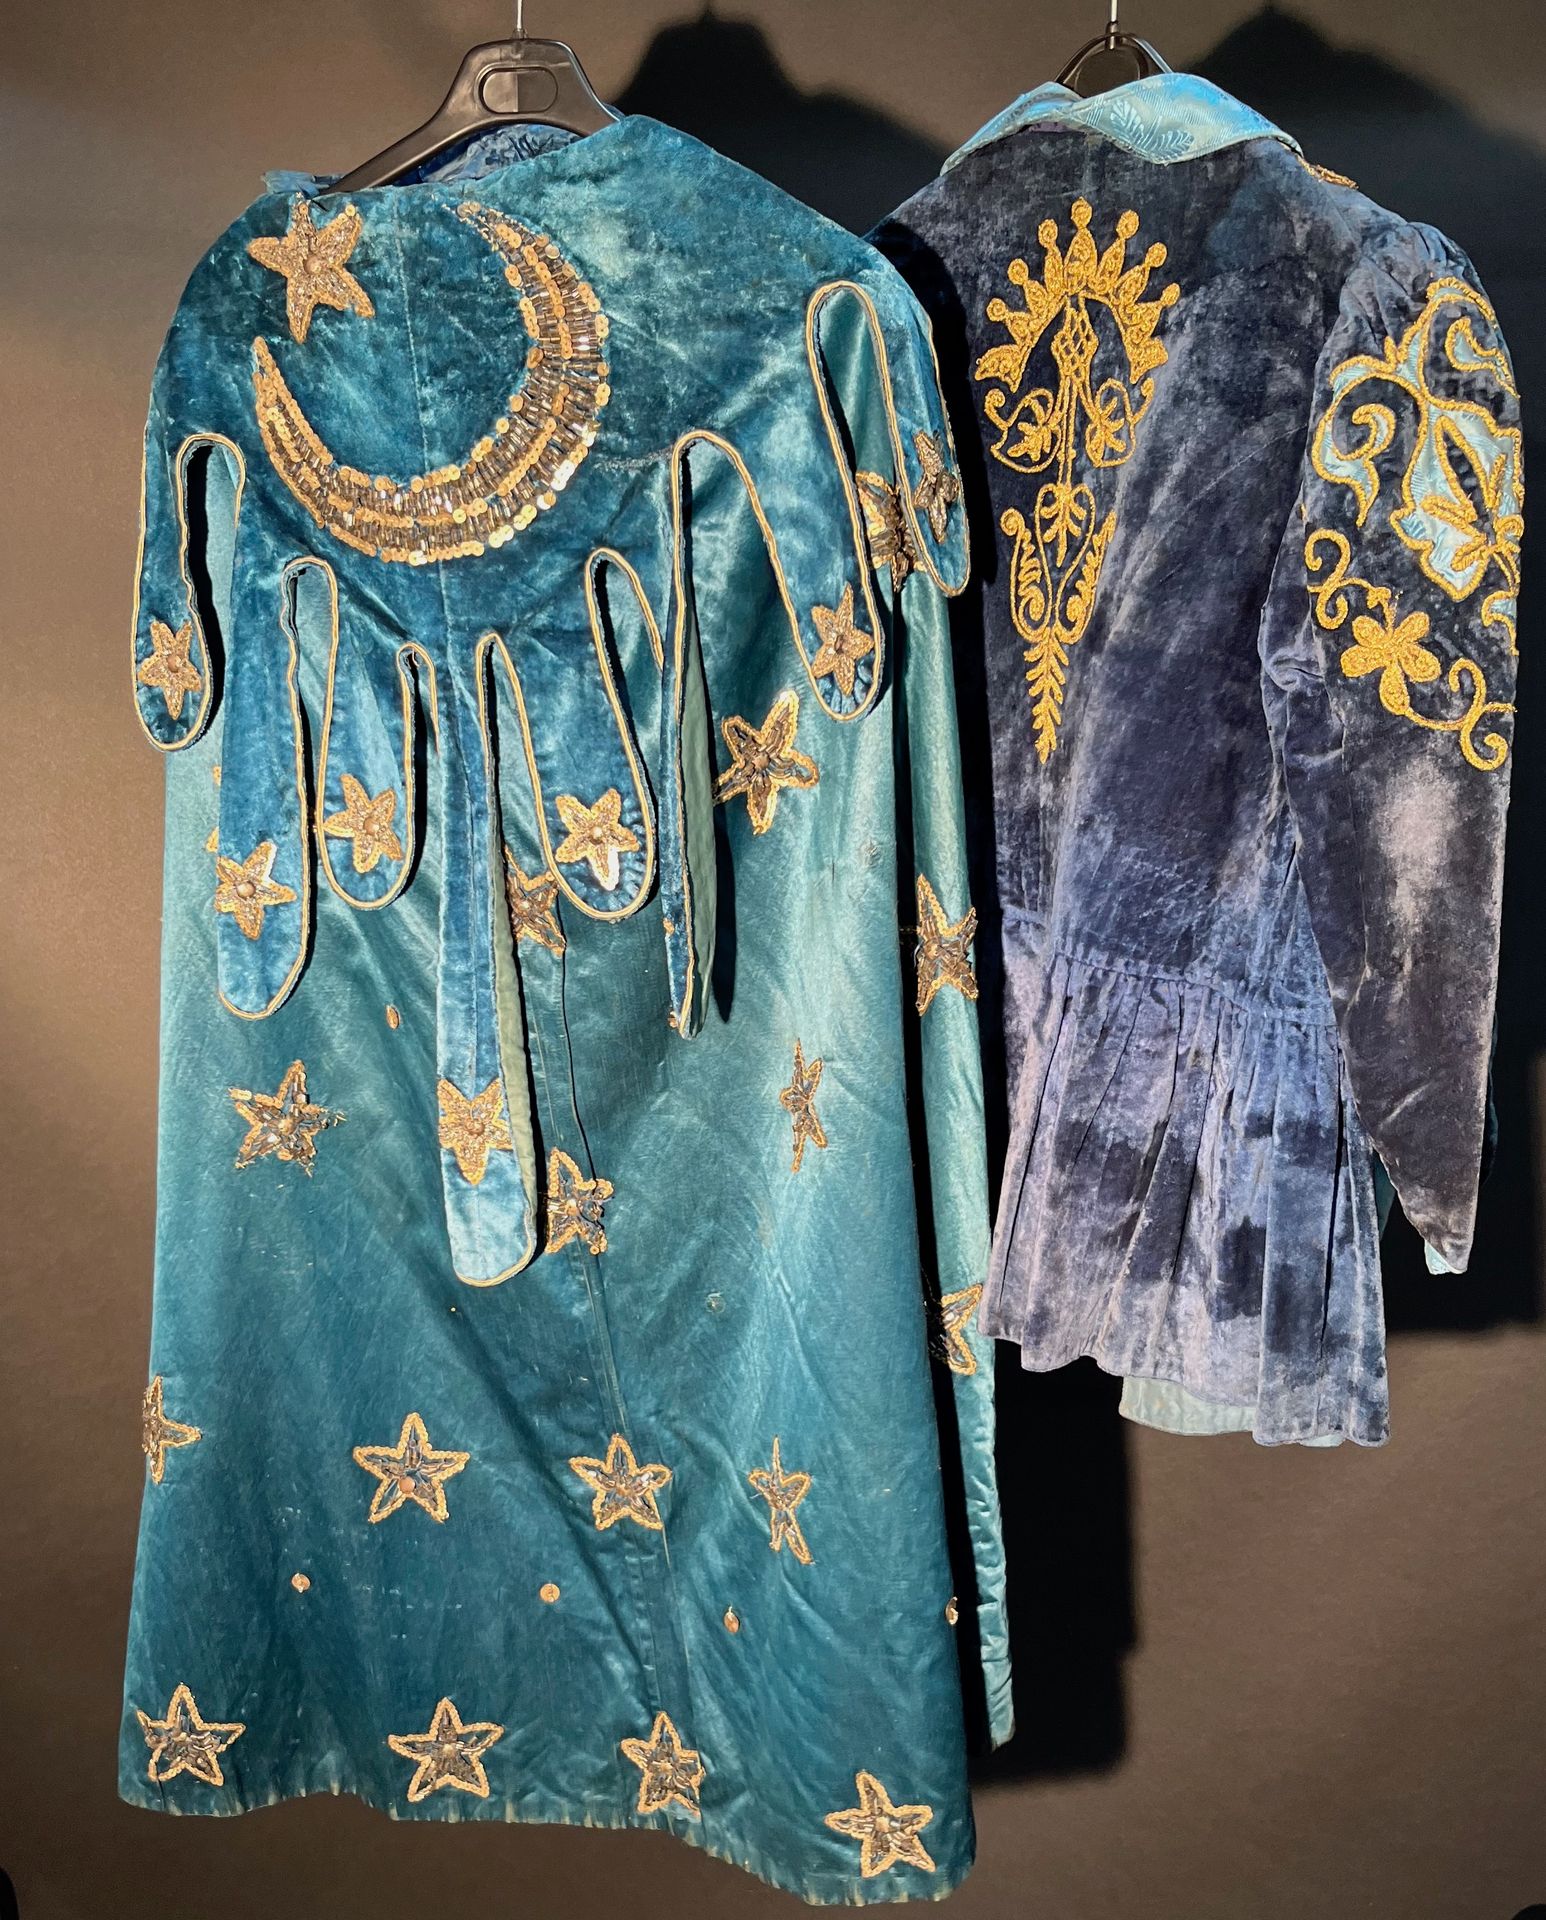 Null 全套 19 世纪服装，包括绣有星星、亮片和金银亮片的天鹅绒夹克和斗篷。还包括一条腰带和一个头饰。